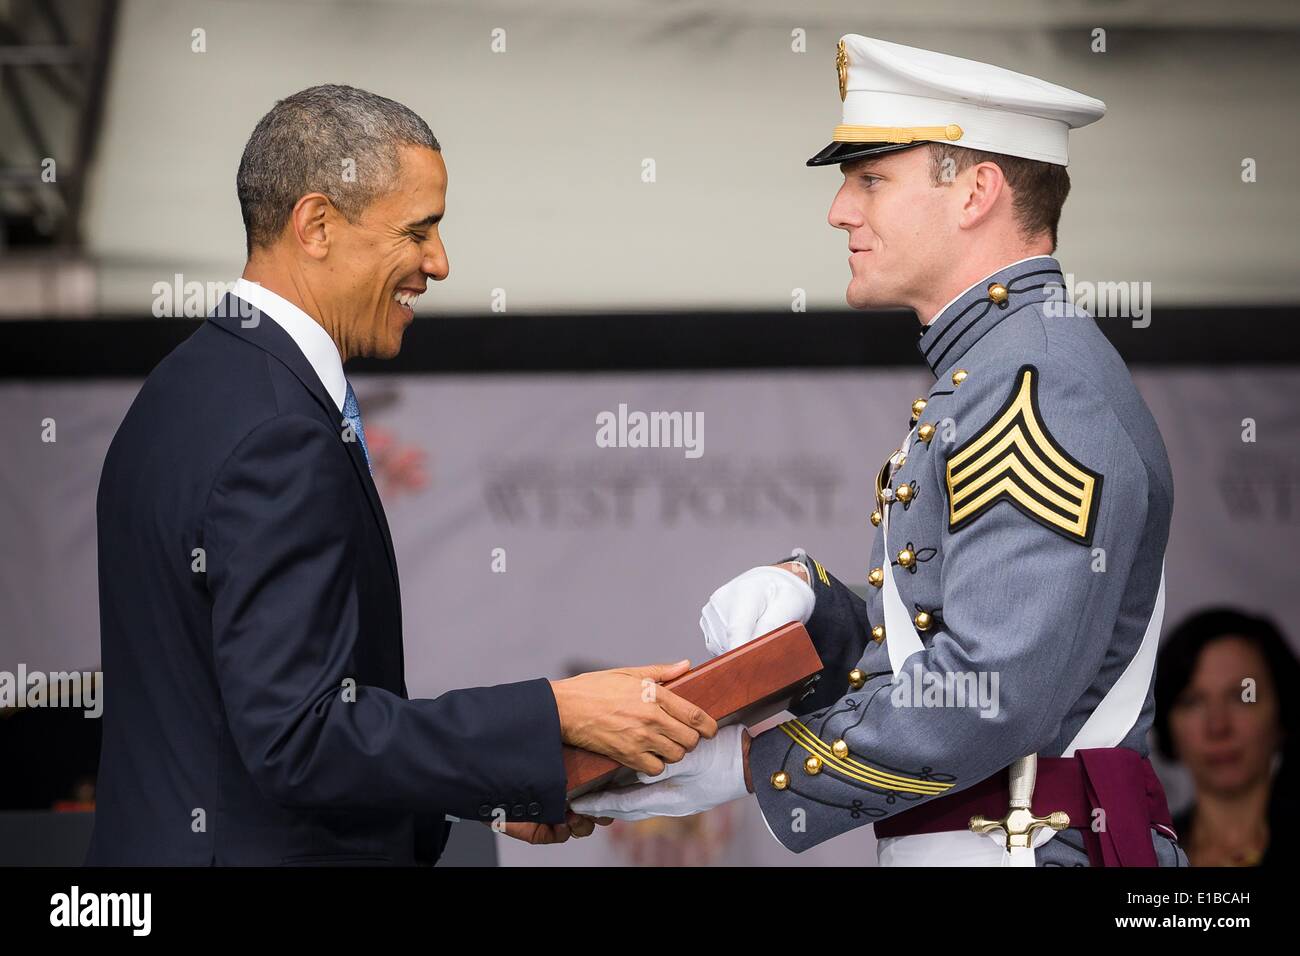 Le président américain Barack Obama con diplômés un élève officier pendant les cérémonies de remise des diplômes à l'Académie militaire des États-Unis, le 28 mai 2014 à West Point, New York. Banque D'Images